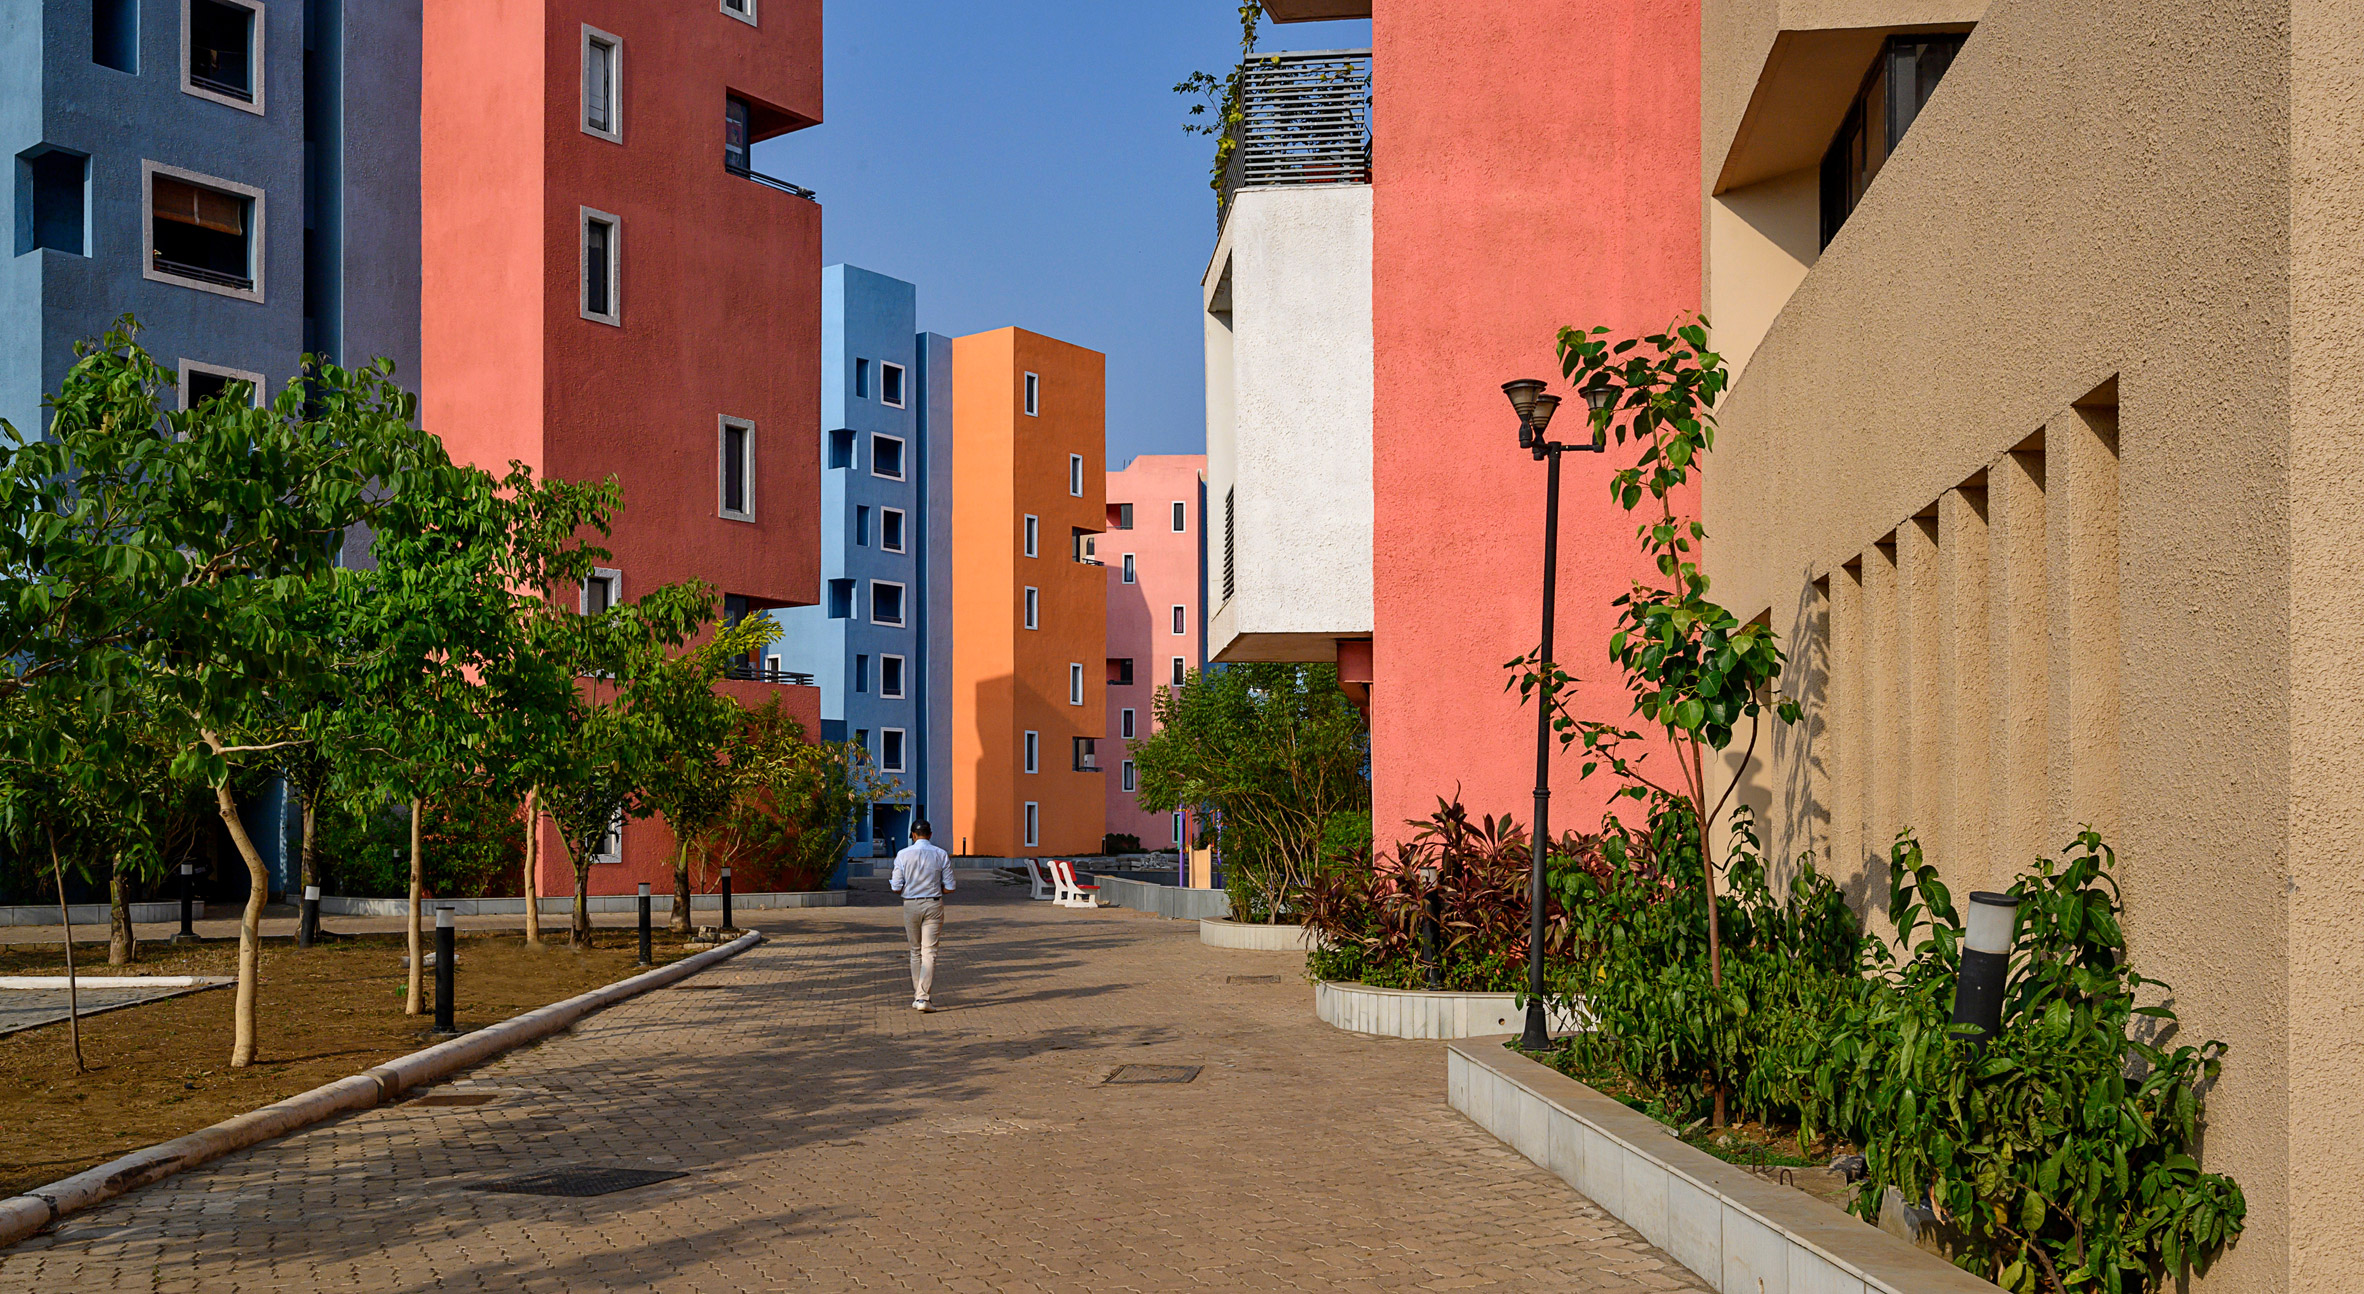 Shree Town by Sanjay Puri Architects